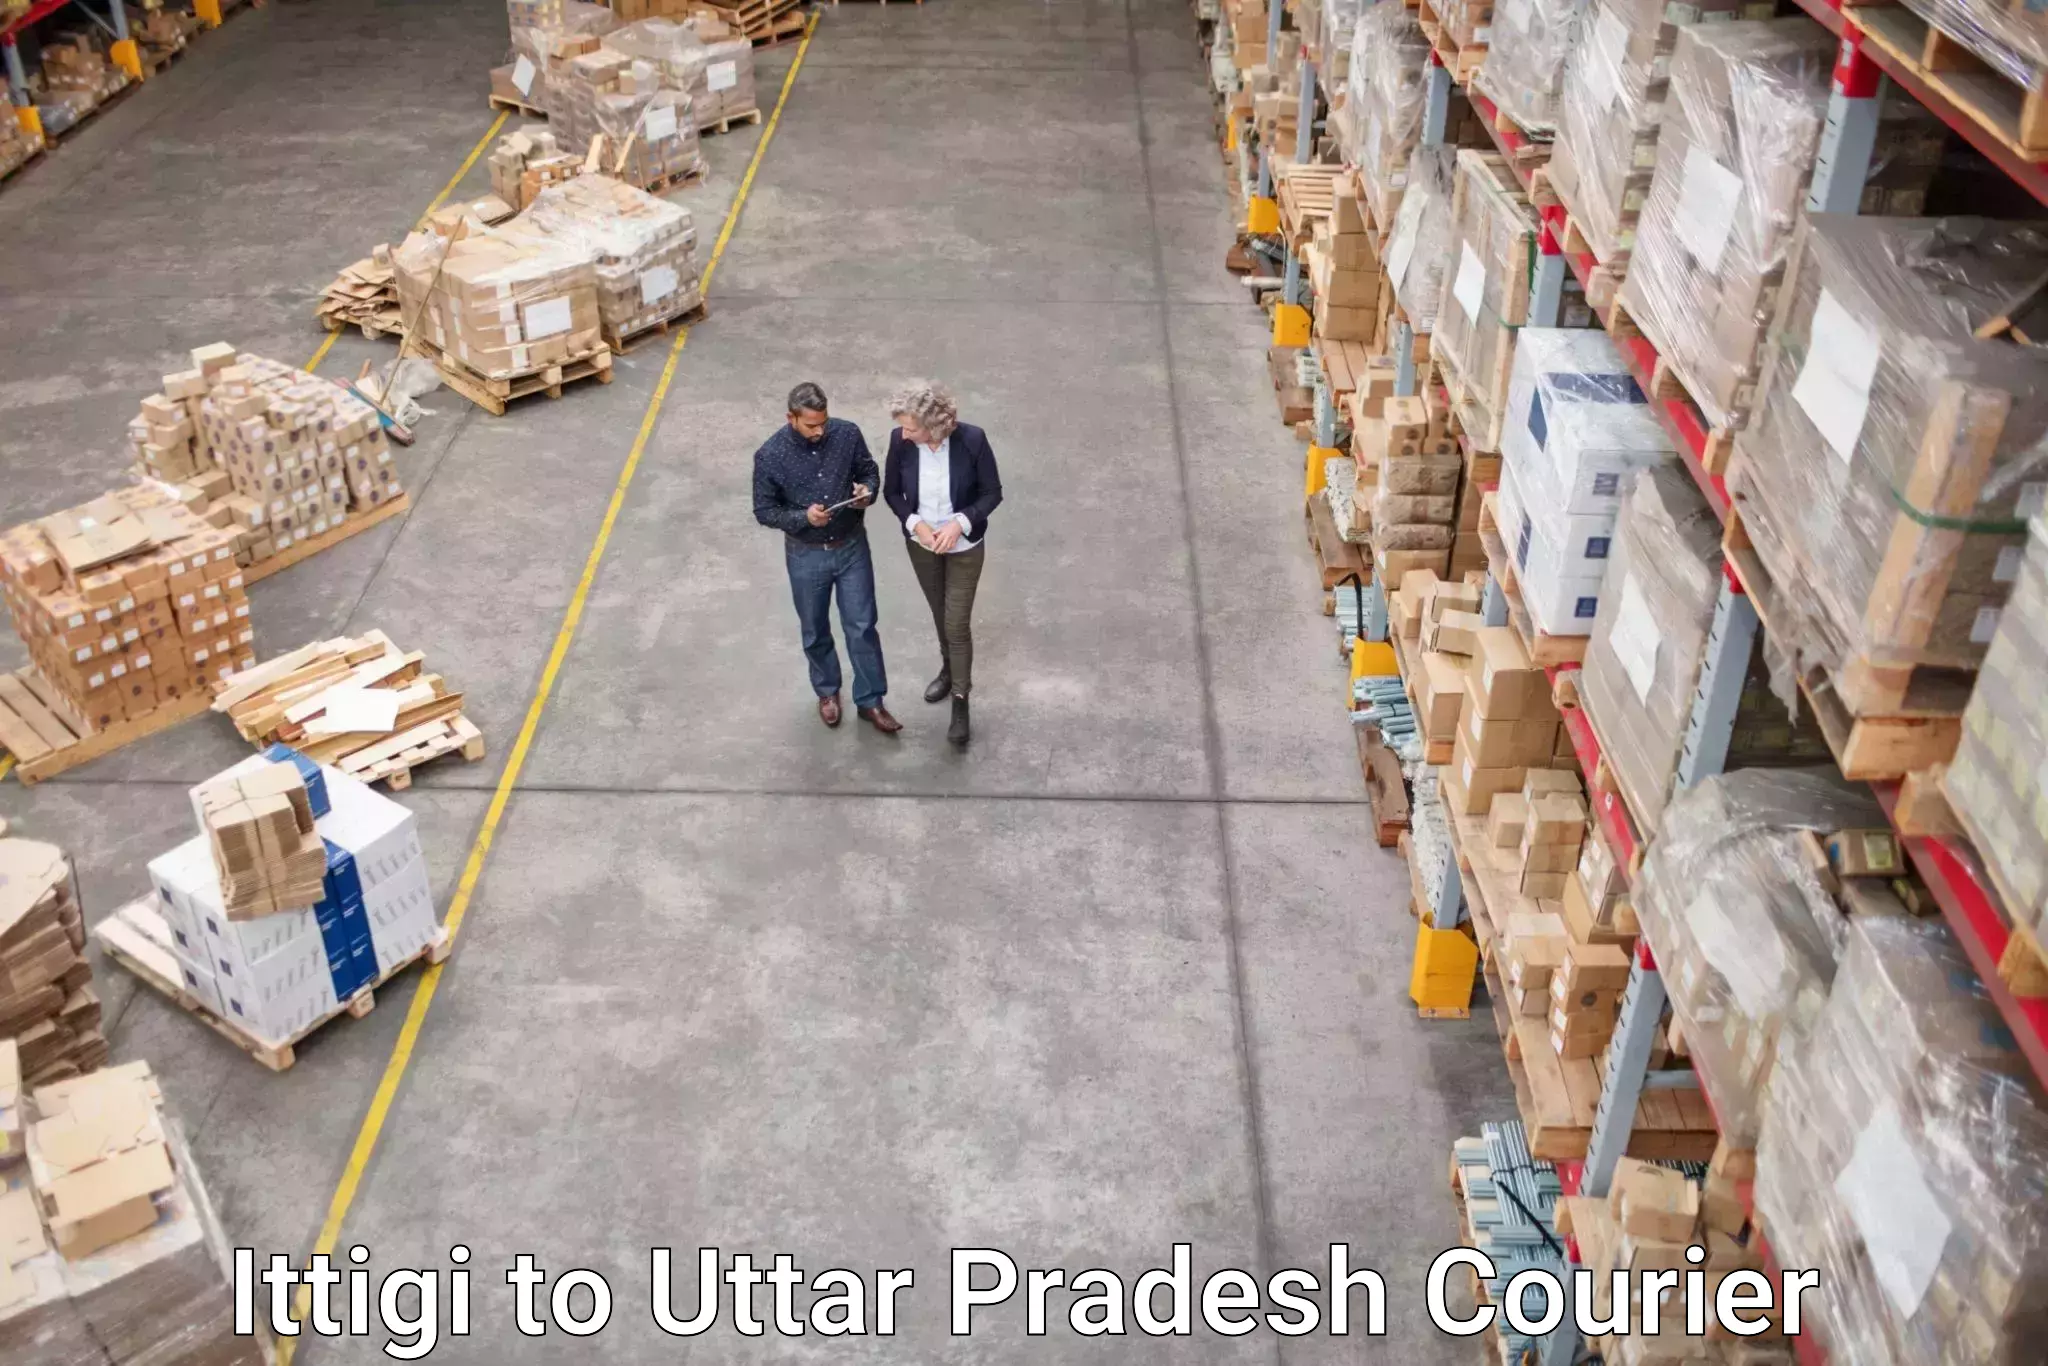 Flexible shipping options Ittigi to Aligarh Muslim University